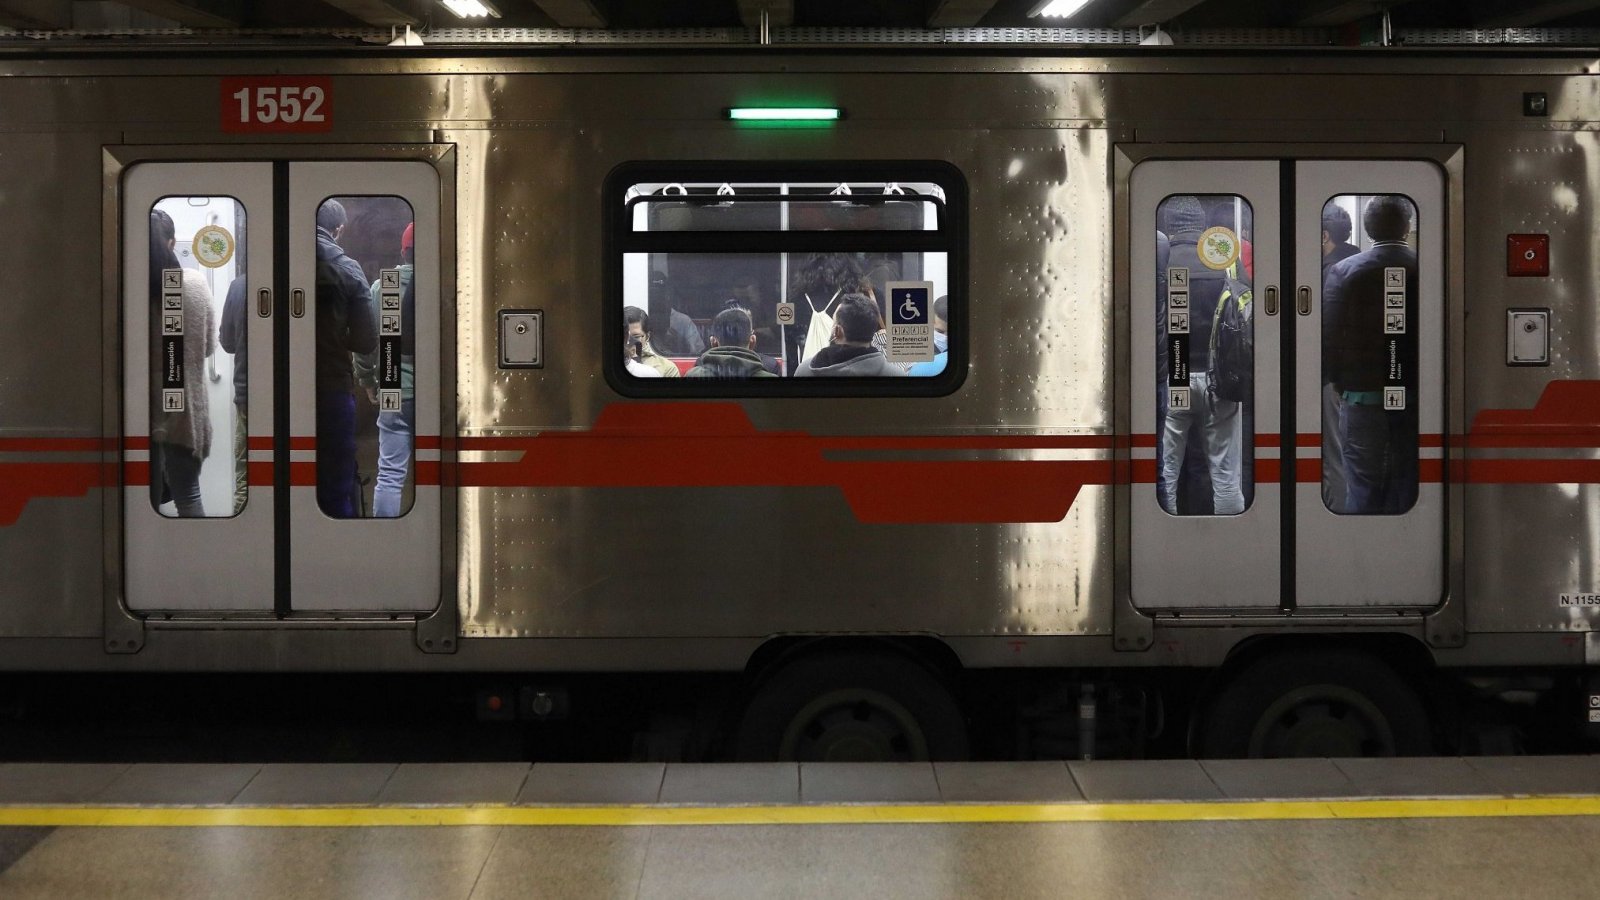 Plebiscito: A qué hora abre y cierra el Metro de Santiago hoy domingo |  24horas